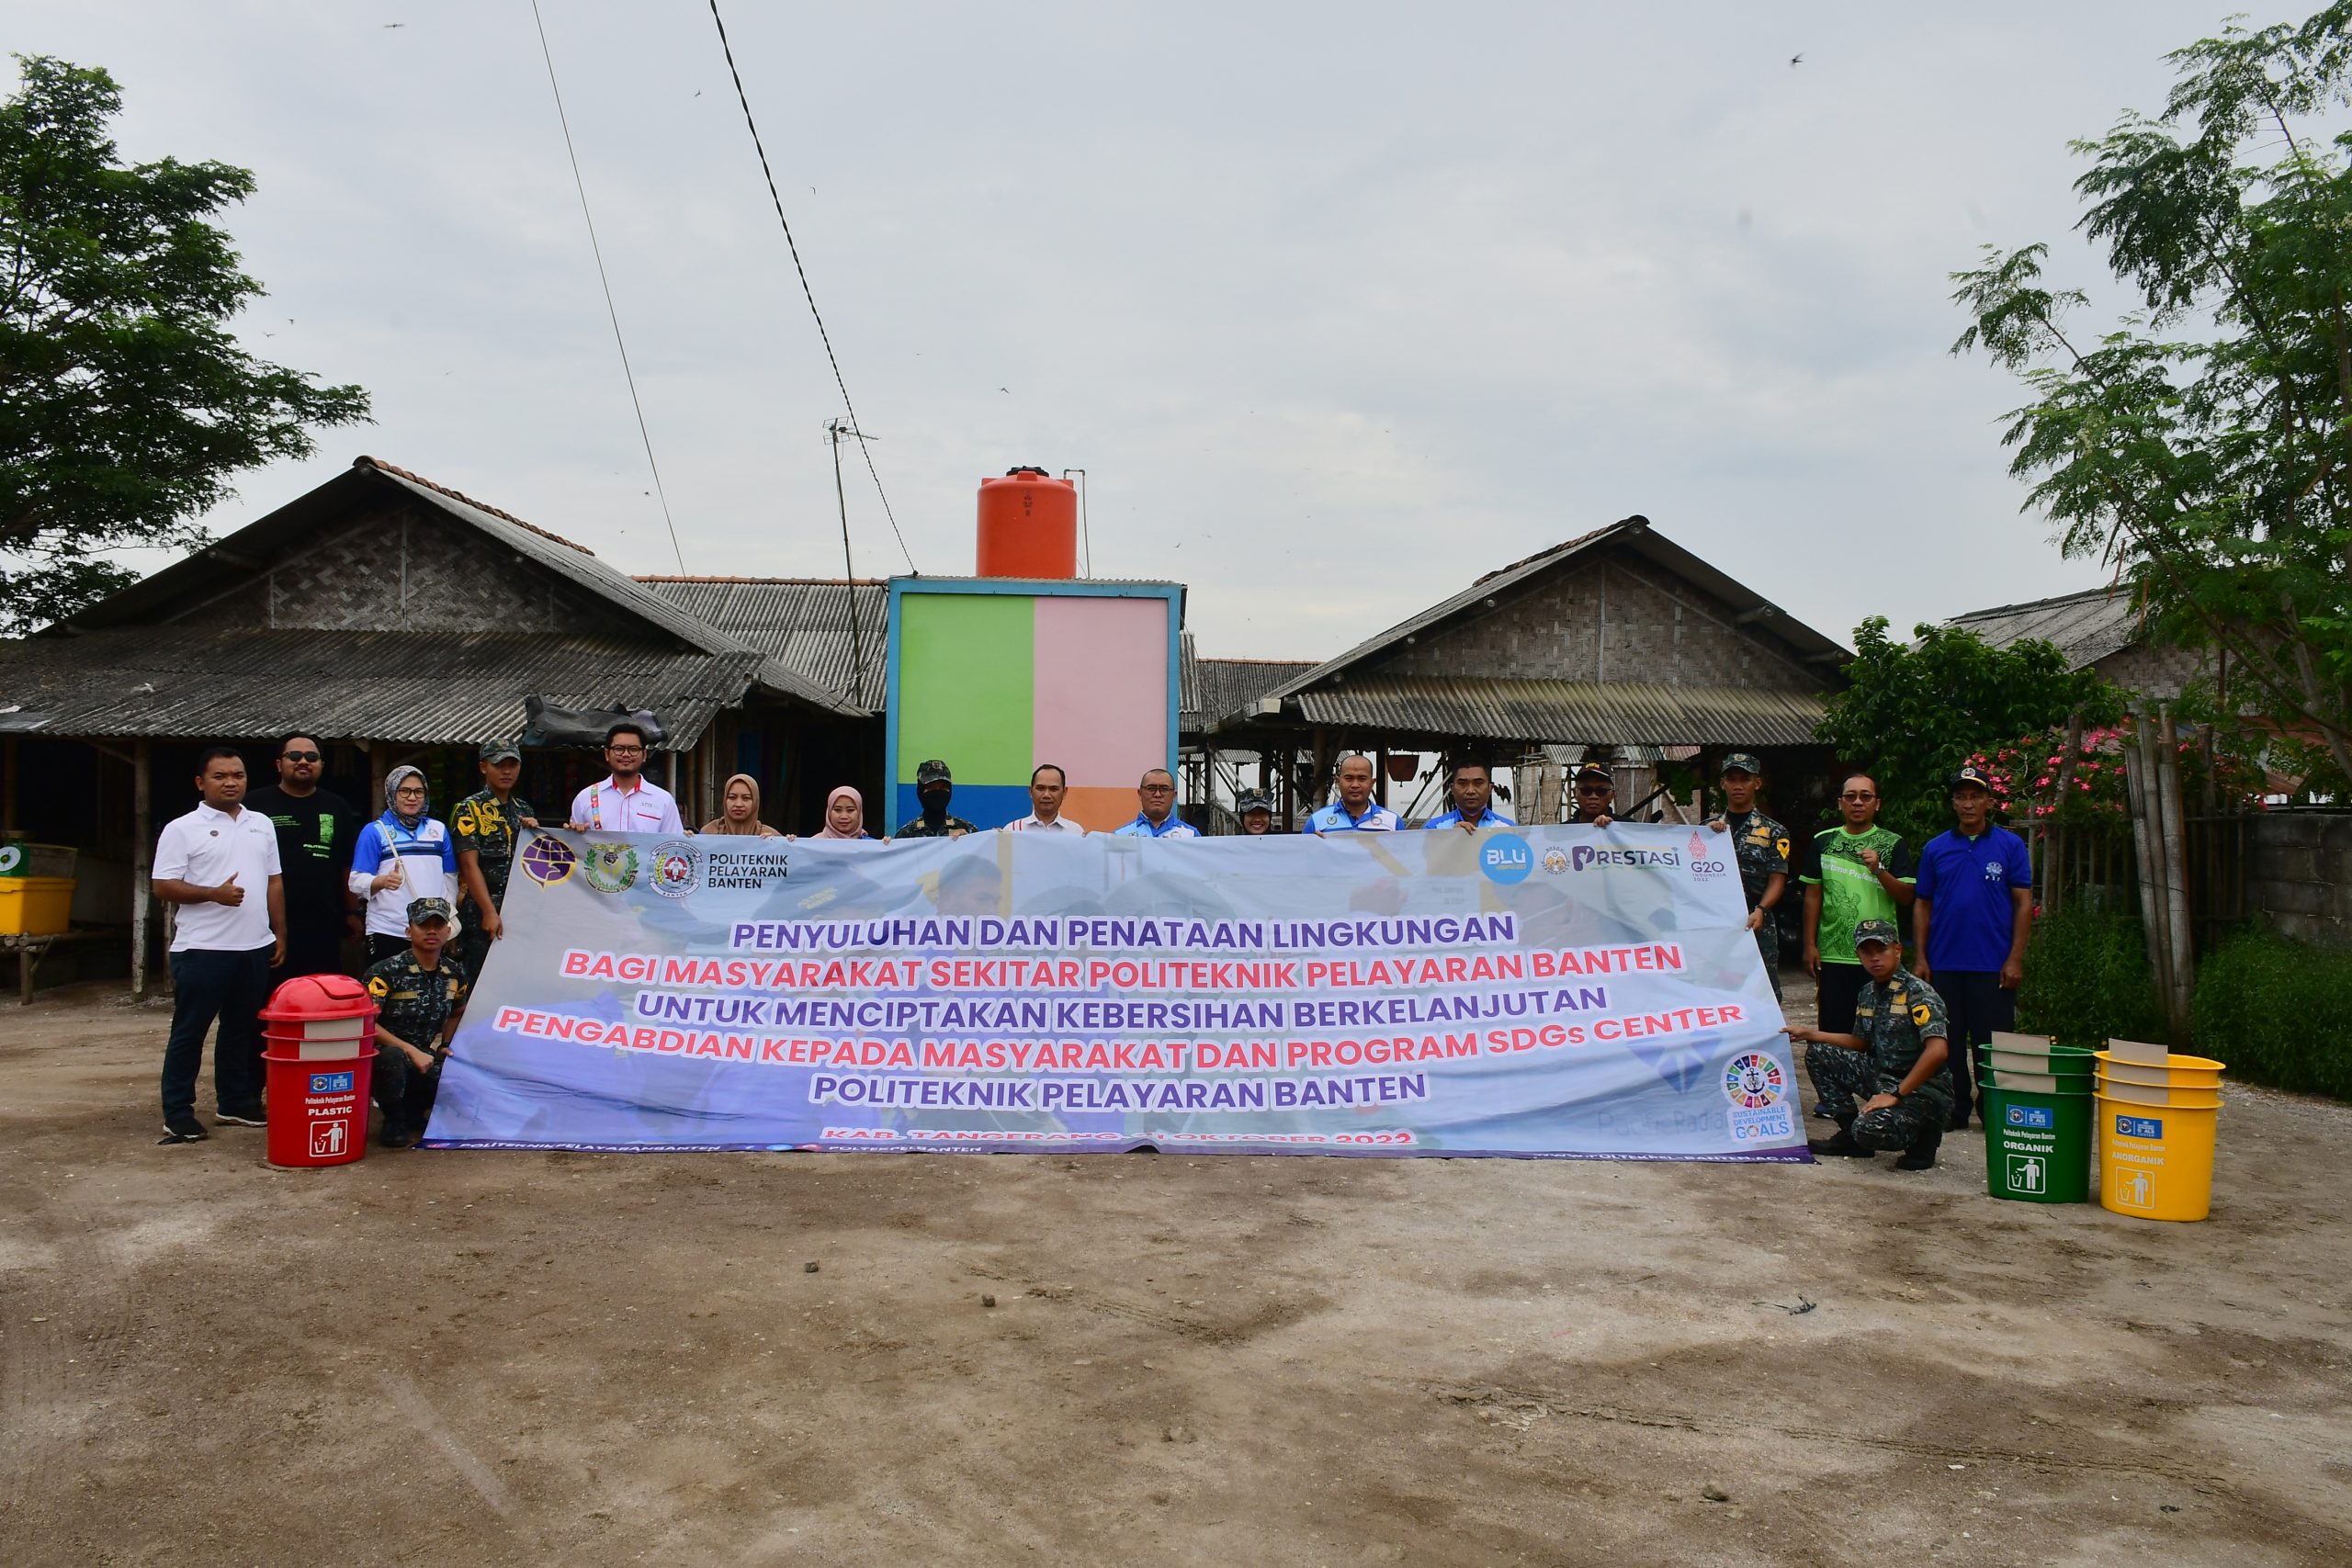 Penyuluhan Dan Penataan Lingkungan bagi Masyarakat sekitar Politeknik Pelayaran Banten untuk menciptakan Kebersihan Berkelanjutan Pengabdian Kepada Masyarakat Dan Program SDGs Center Politeknik Pelayaran Banten